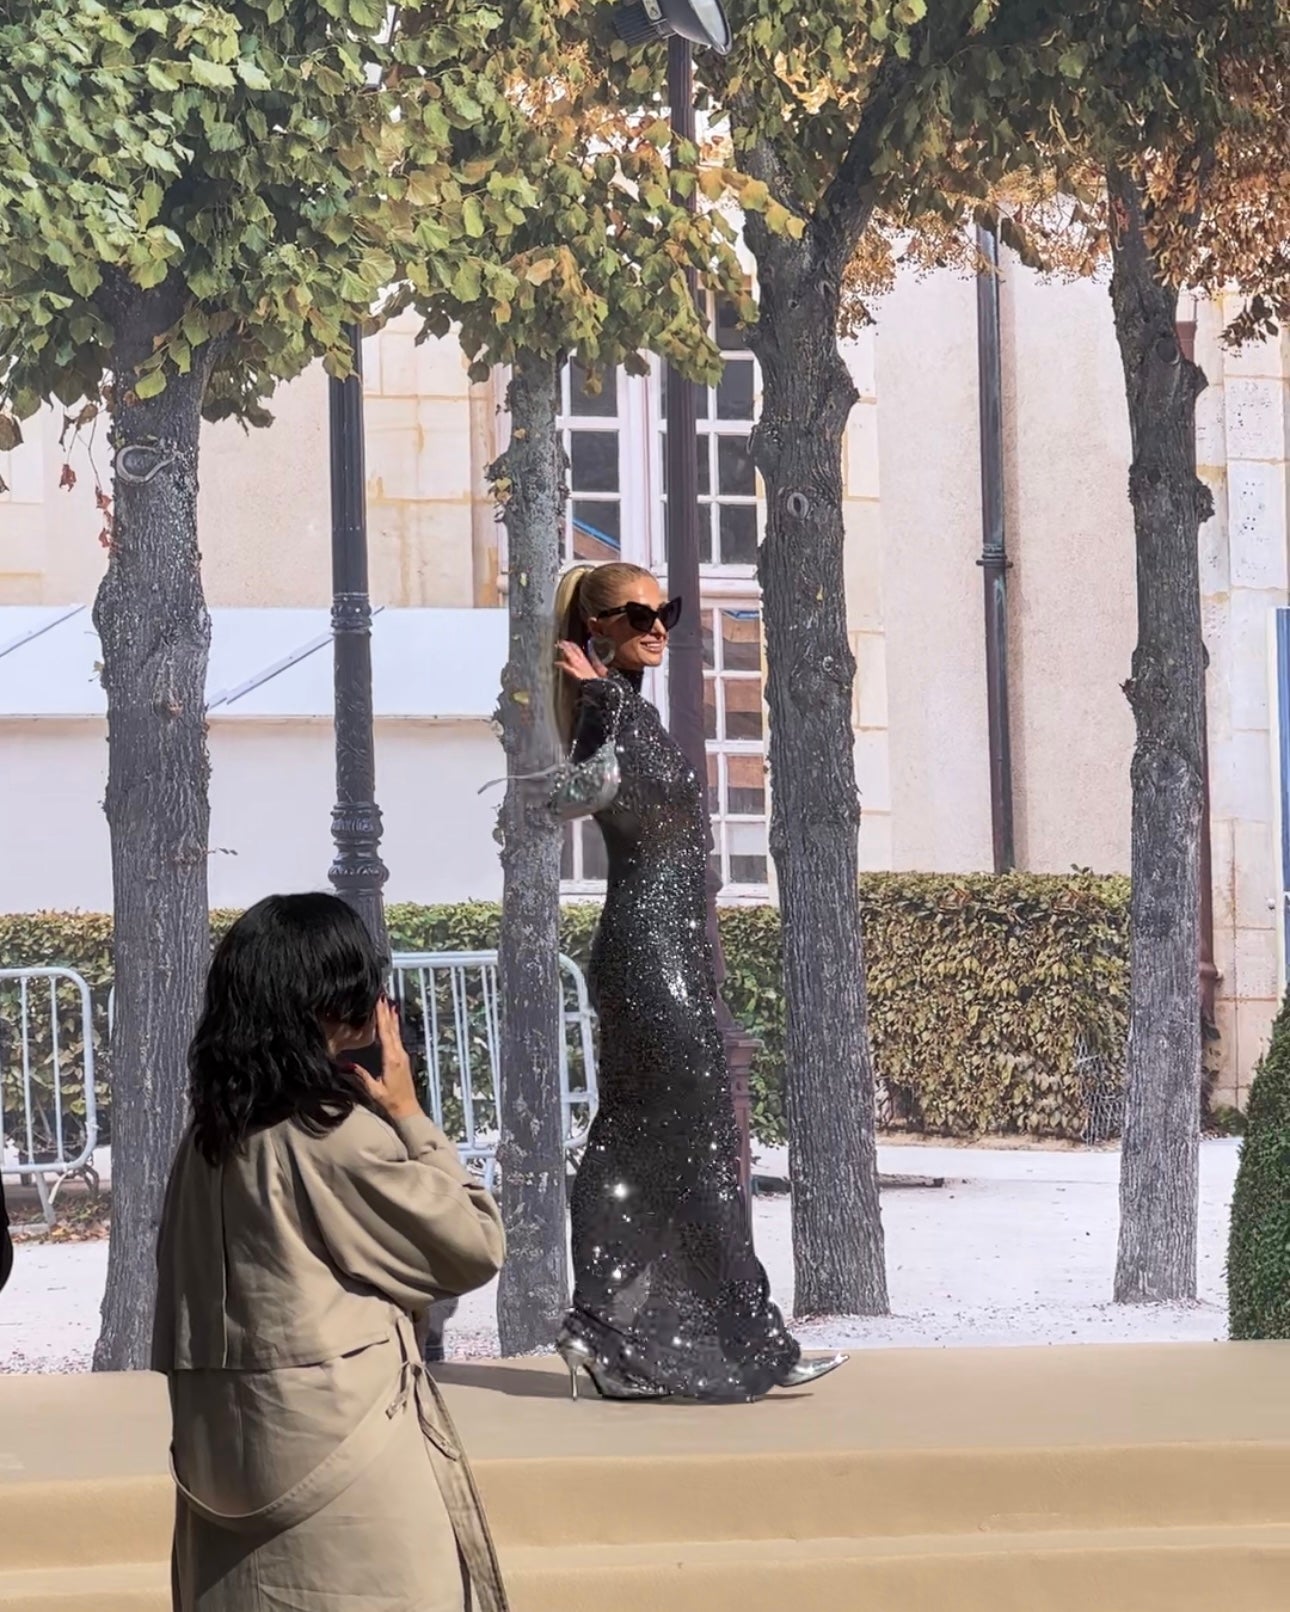 Paris Hilton at Paris Fashion Week after Balenciaga show